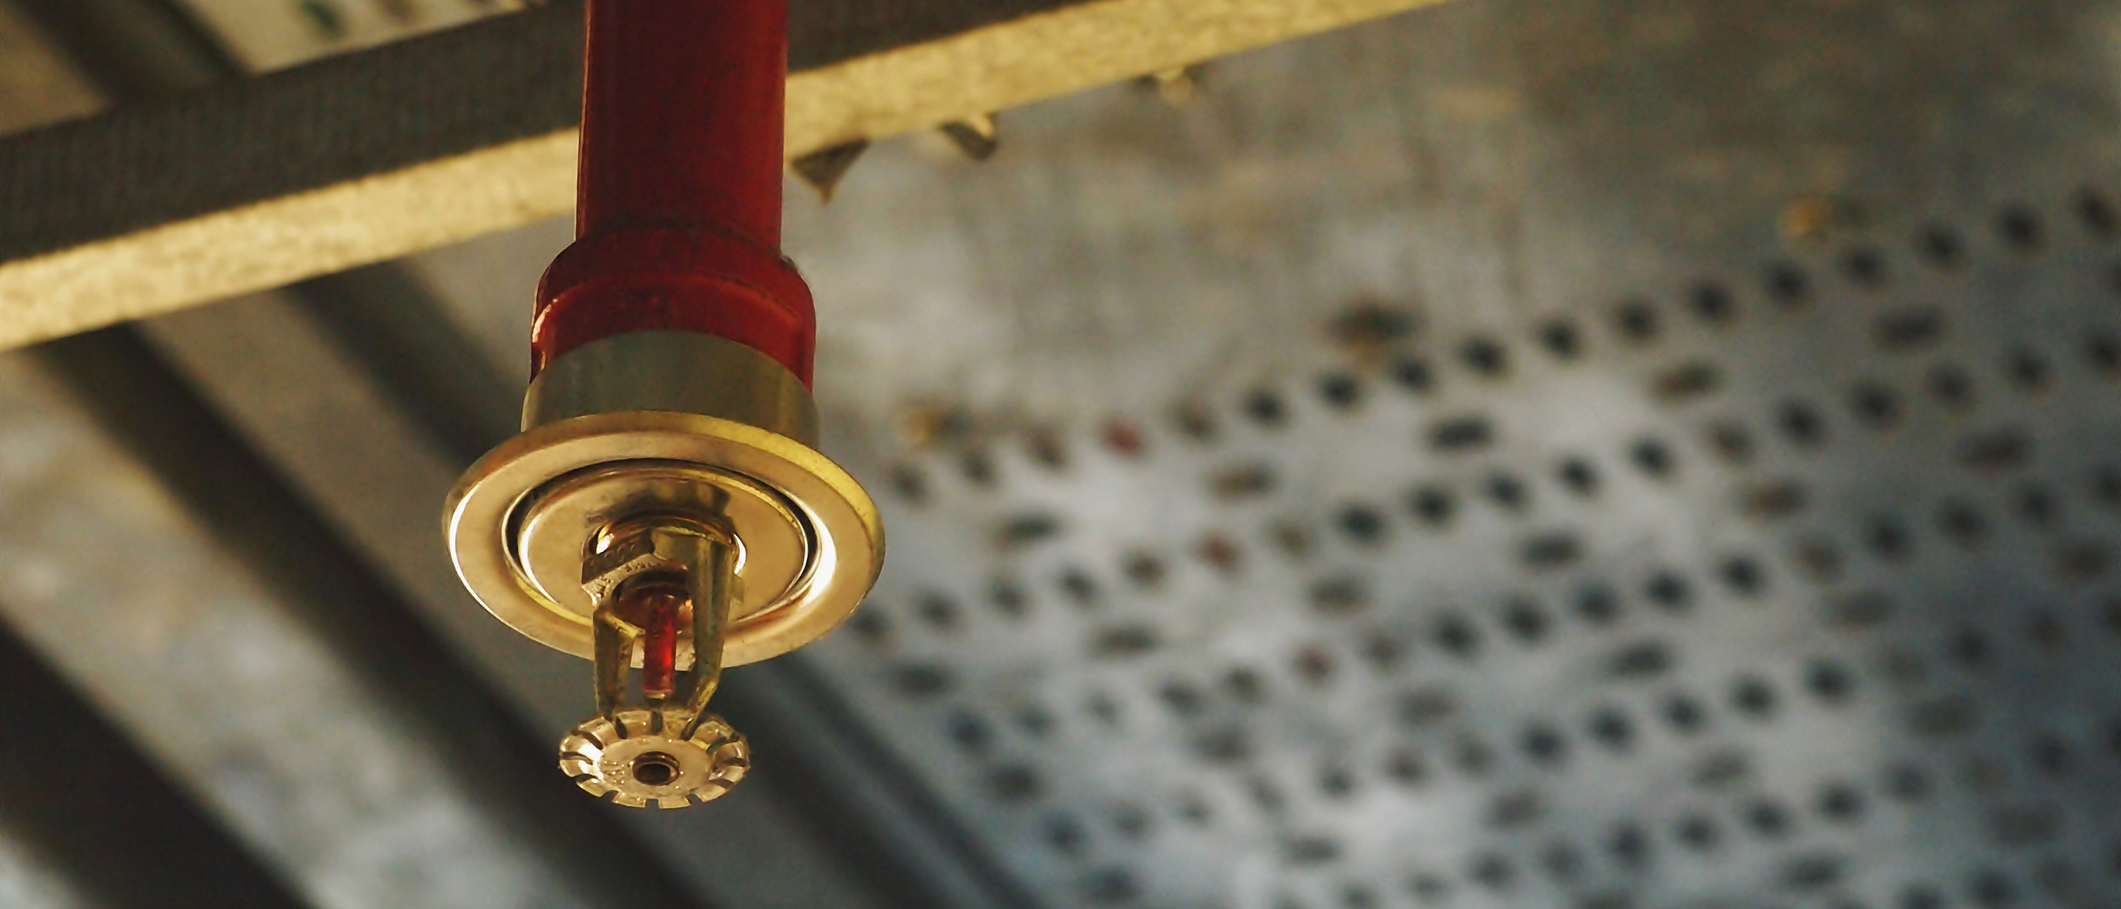 Close up of building fire sprinkler system